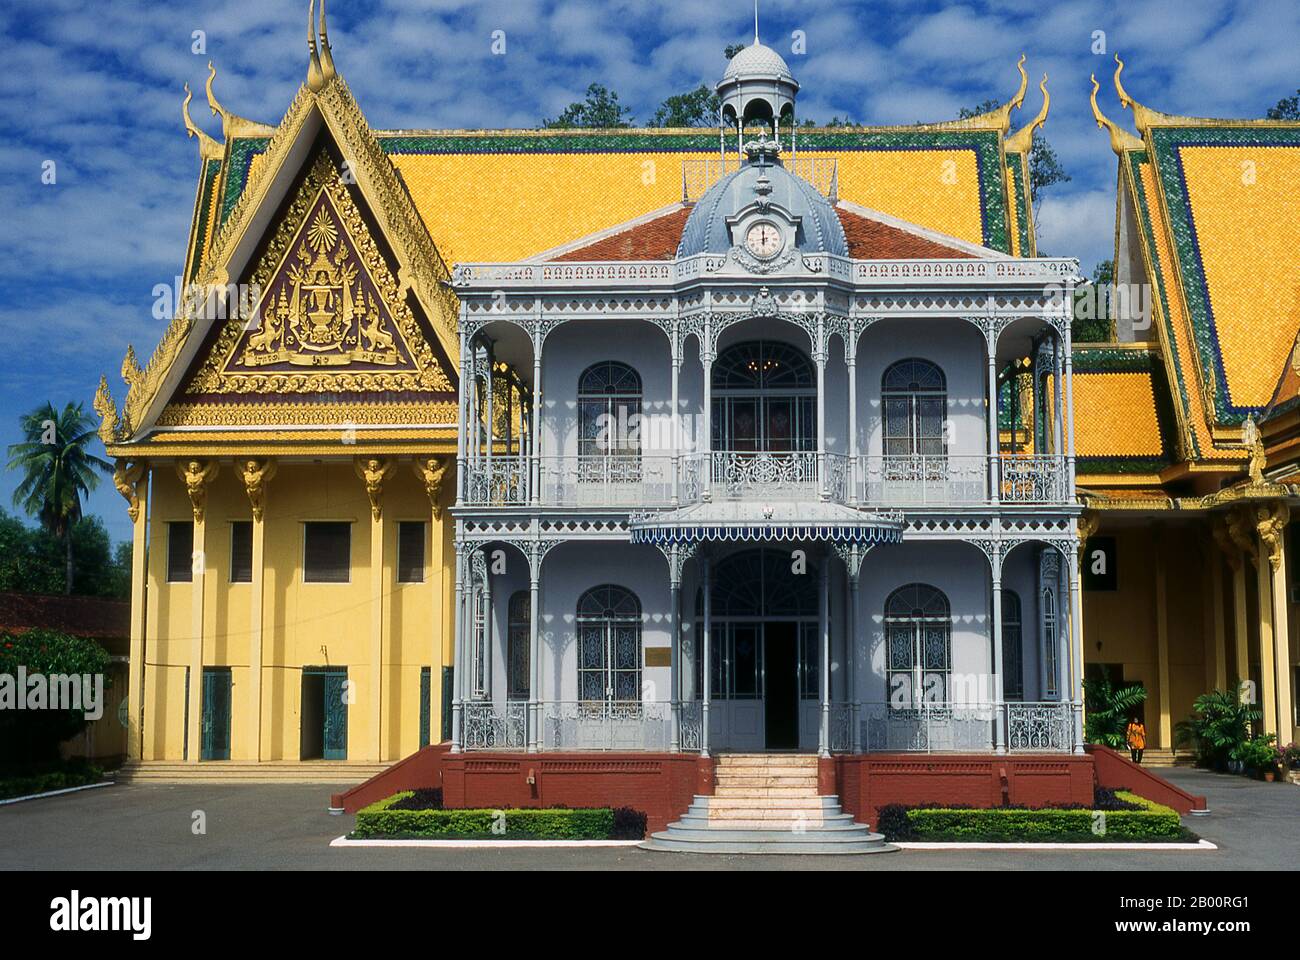 Cambogia: Padiglione di Napoleone III, Palazzo reale e Pagoda d'Argento, Phnom Penh. Il Palazzo reale (Preah Barum Reacha Veang nei Preah Reacheanachak Kampuchea) e la Pagoda d'Argento, a Phnom Penh, sono un complesso di edifici che serve come residenza reale del re di Cambogia. Il suo nome completo in lingua khmer è Preah Barom Reachea Veang Chaktomuk. I re di Cambogia lo hanno occupato da quando è stato costruito nel 1860, con un periodo di assenza quando il paese è entrato in agitazione durante e dopo il regno dei Khmer rossi. Foto Stock